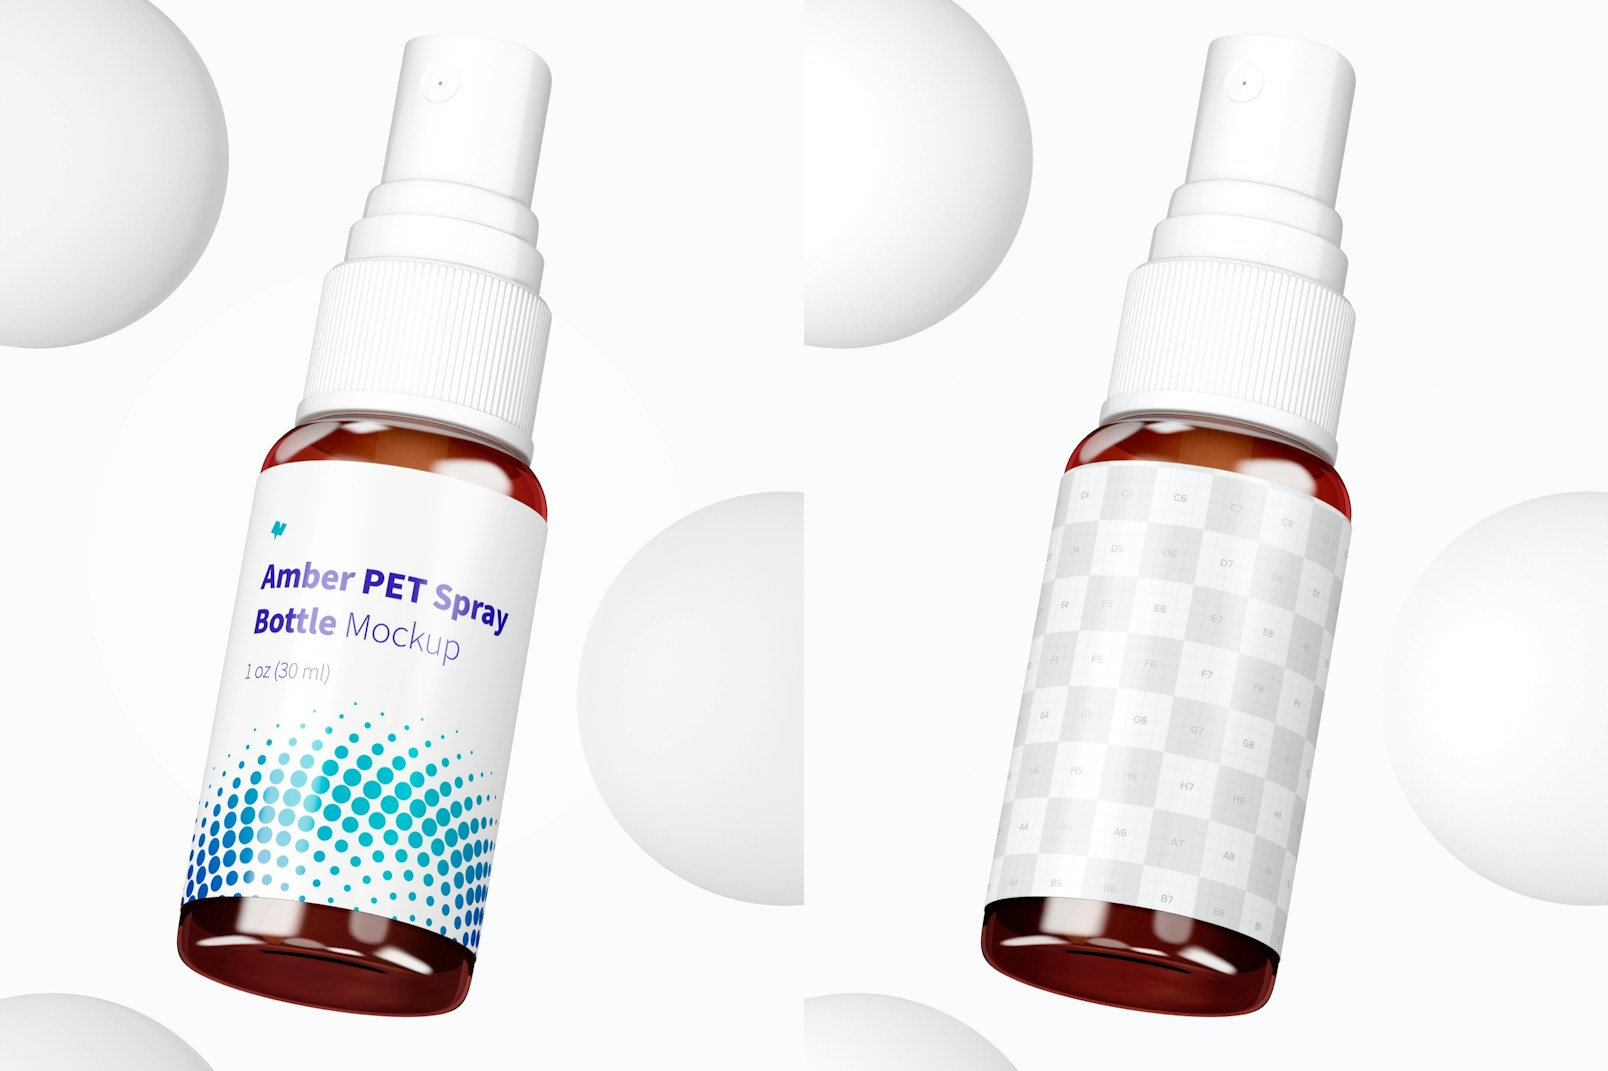 1 oz Amber PET Spray Bottle Mockup, Floating